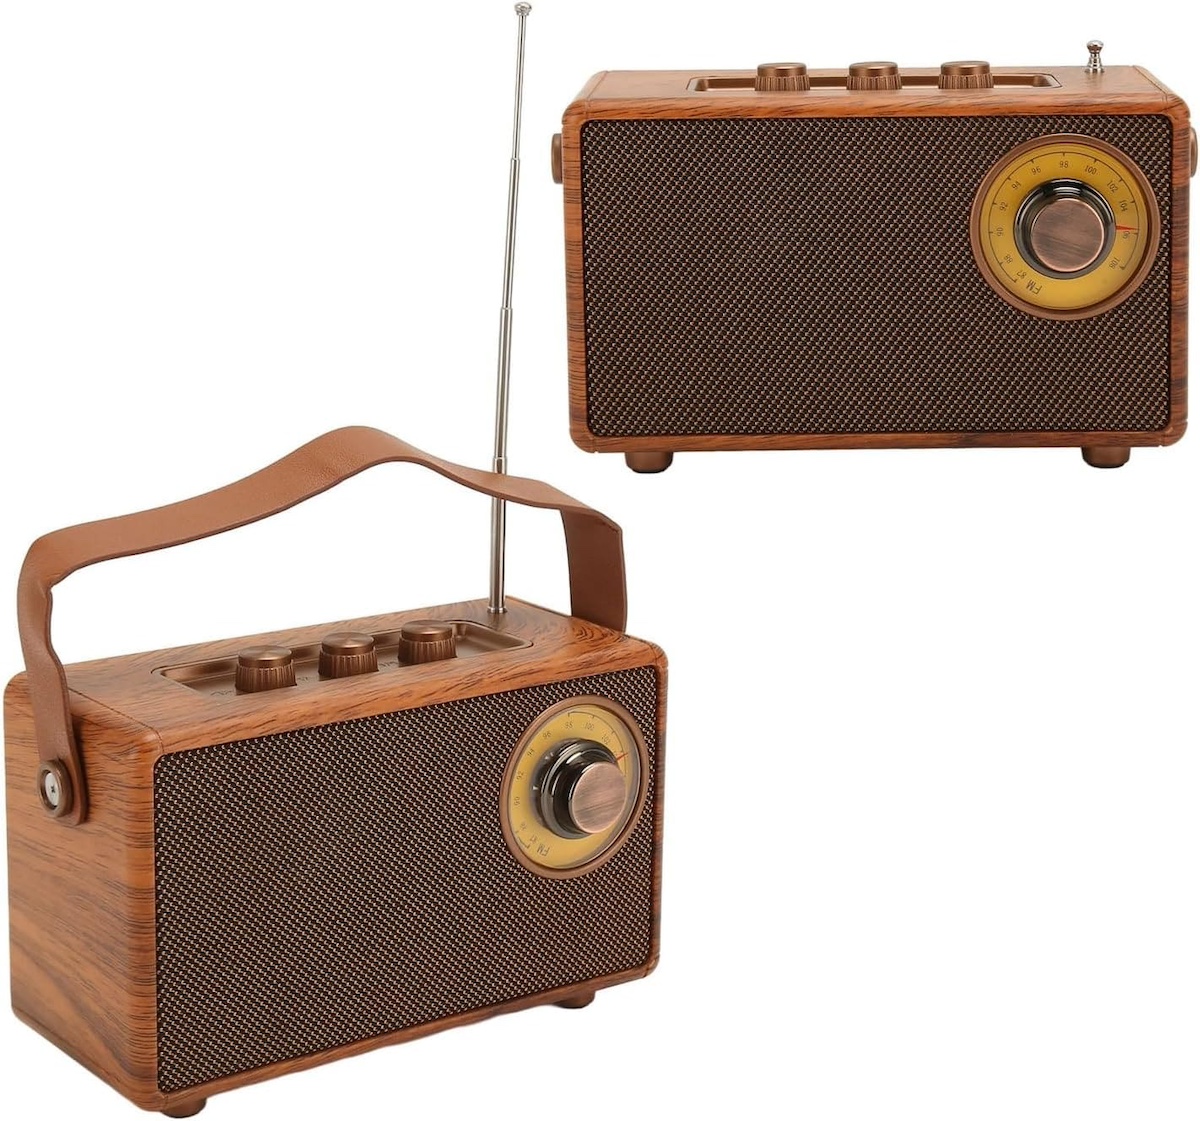 radio mini small retro vintage wooden style